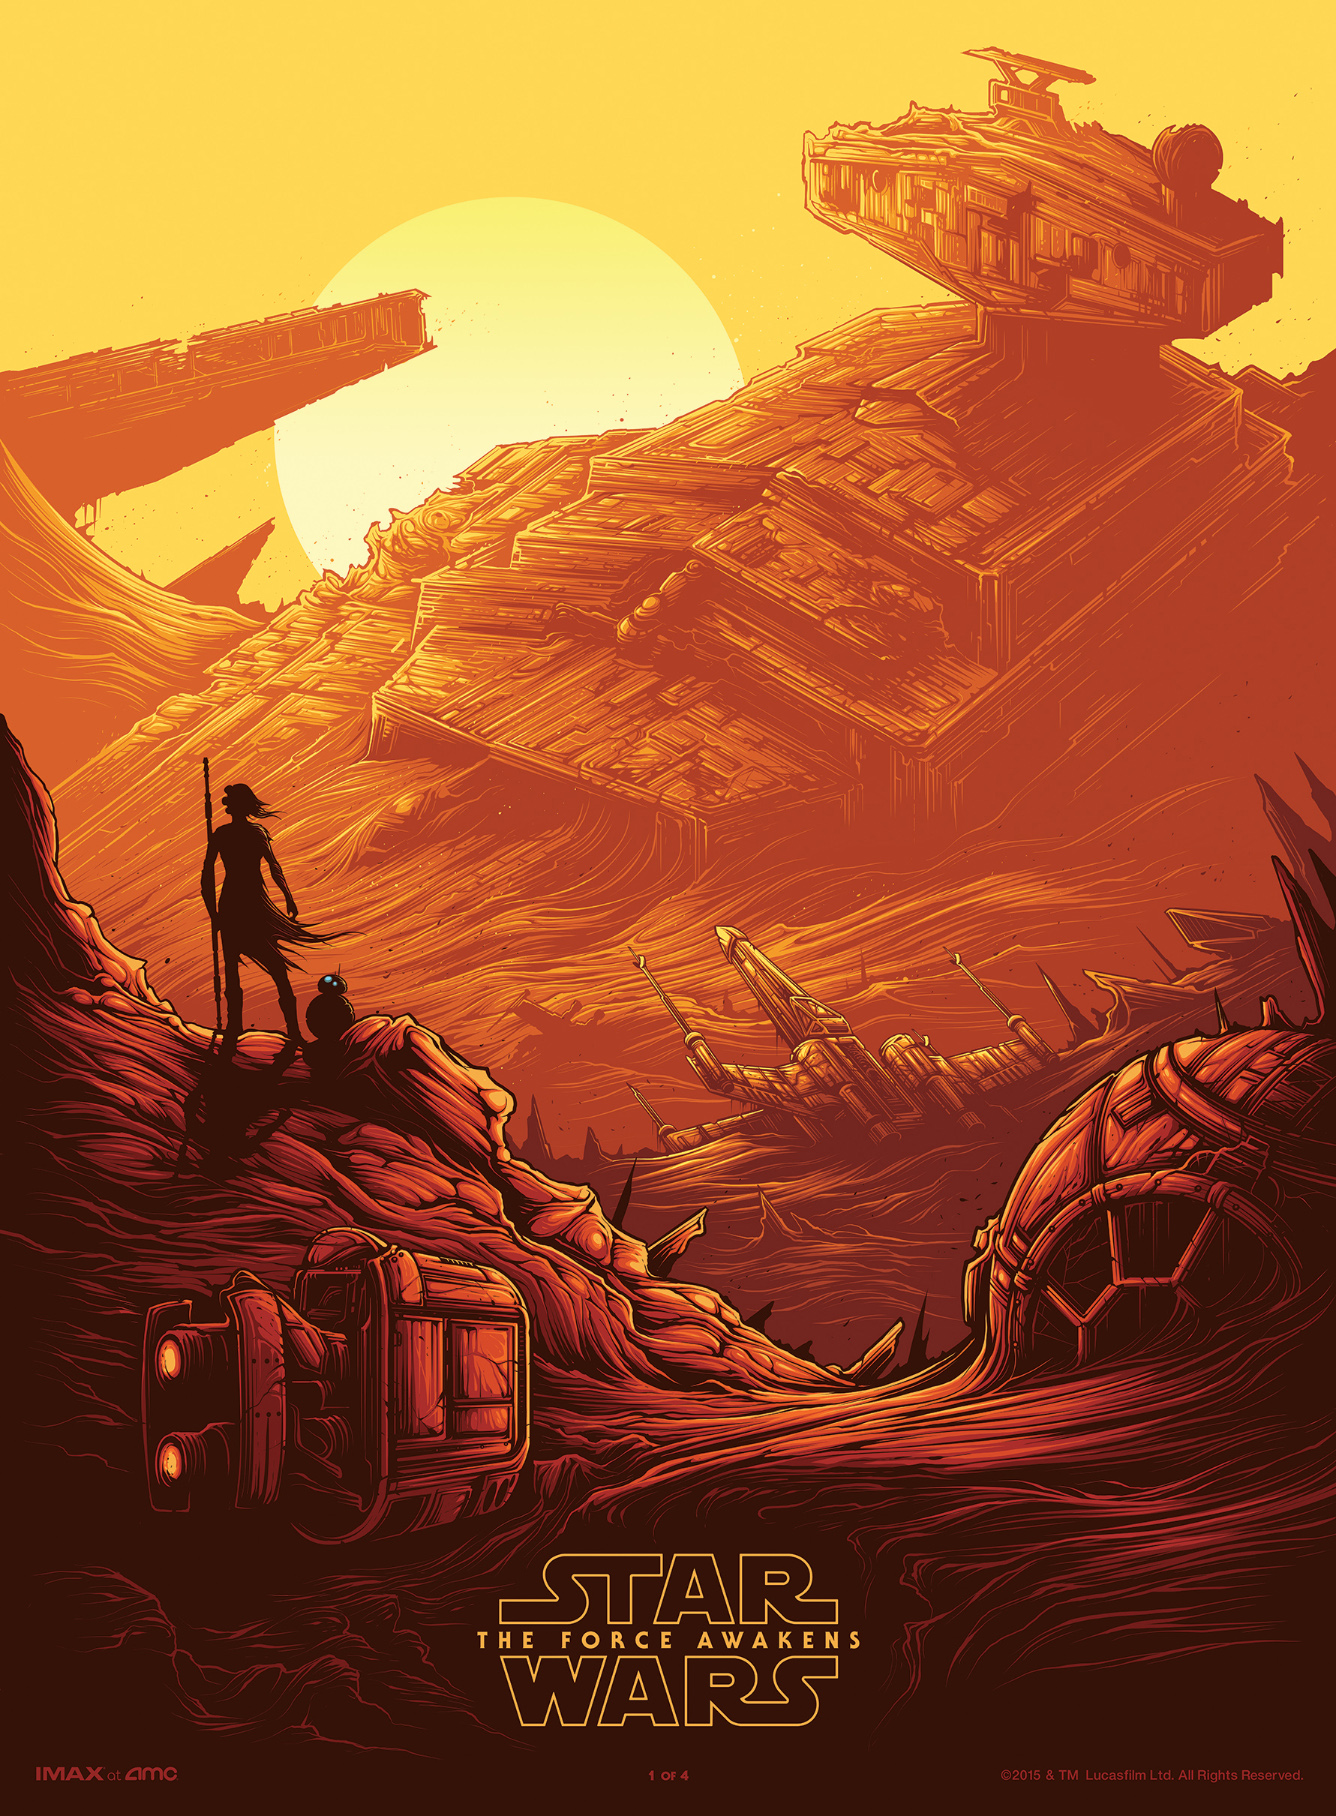 Star Wars fan art poster